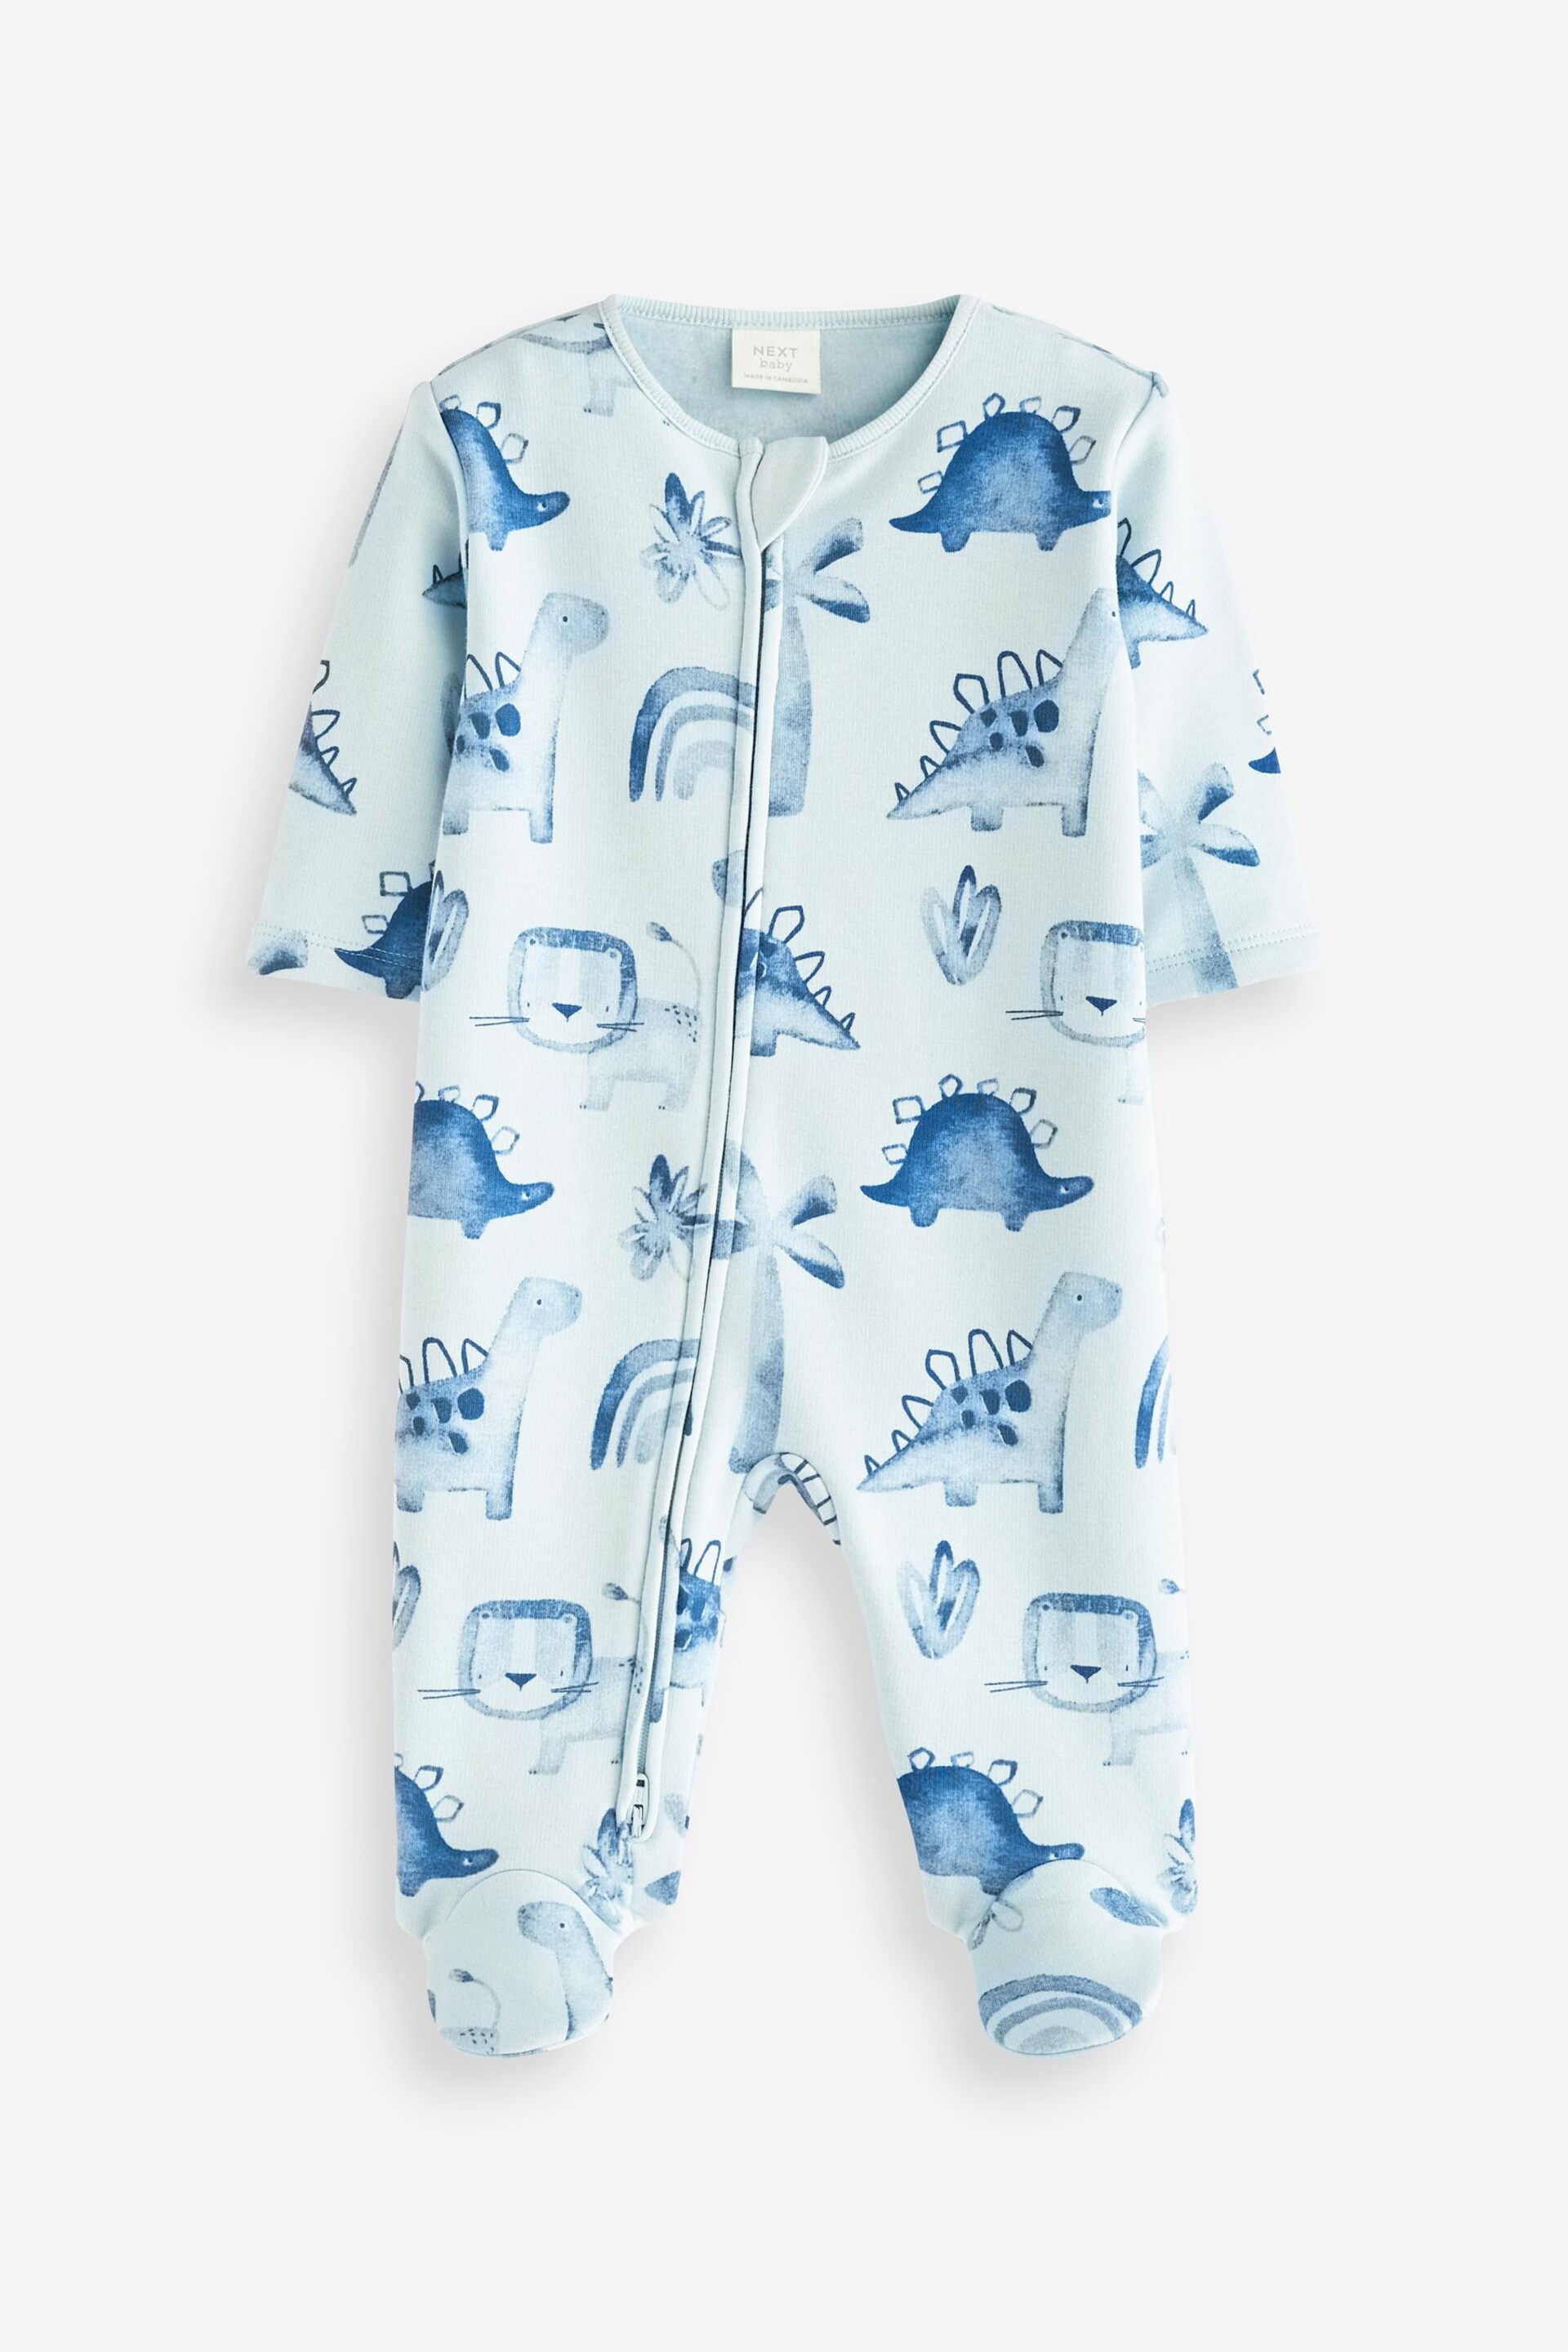 Blue Fleece Lined Baby Sleepsuit - Image 4 of 5